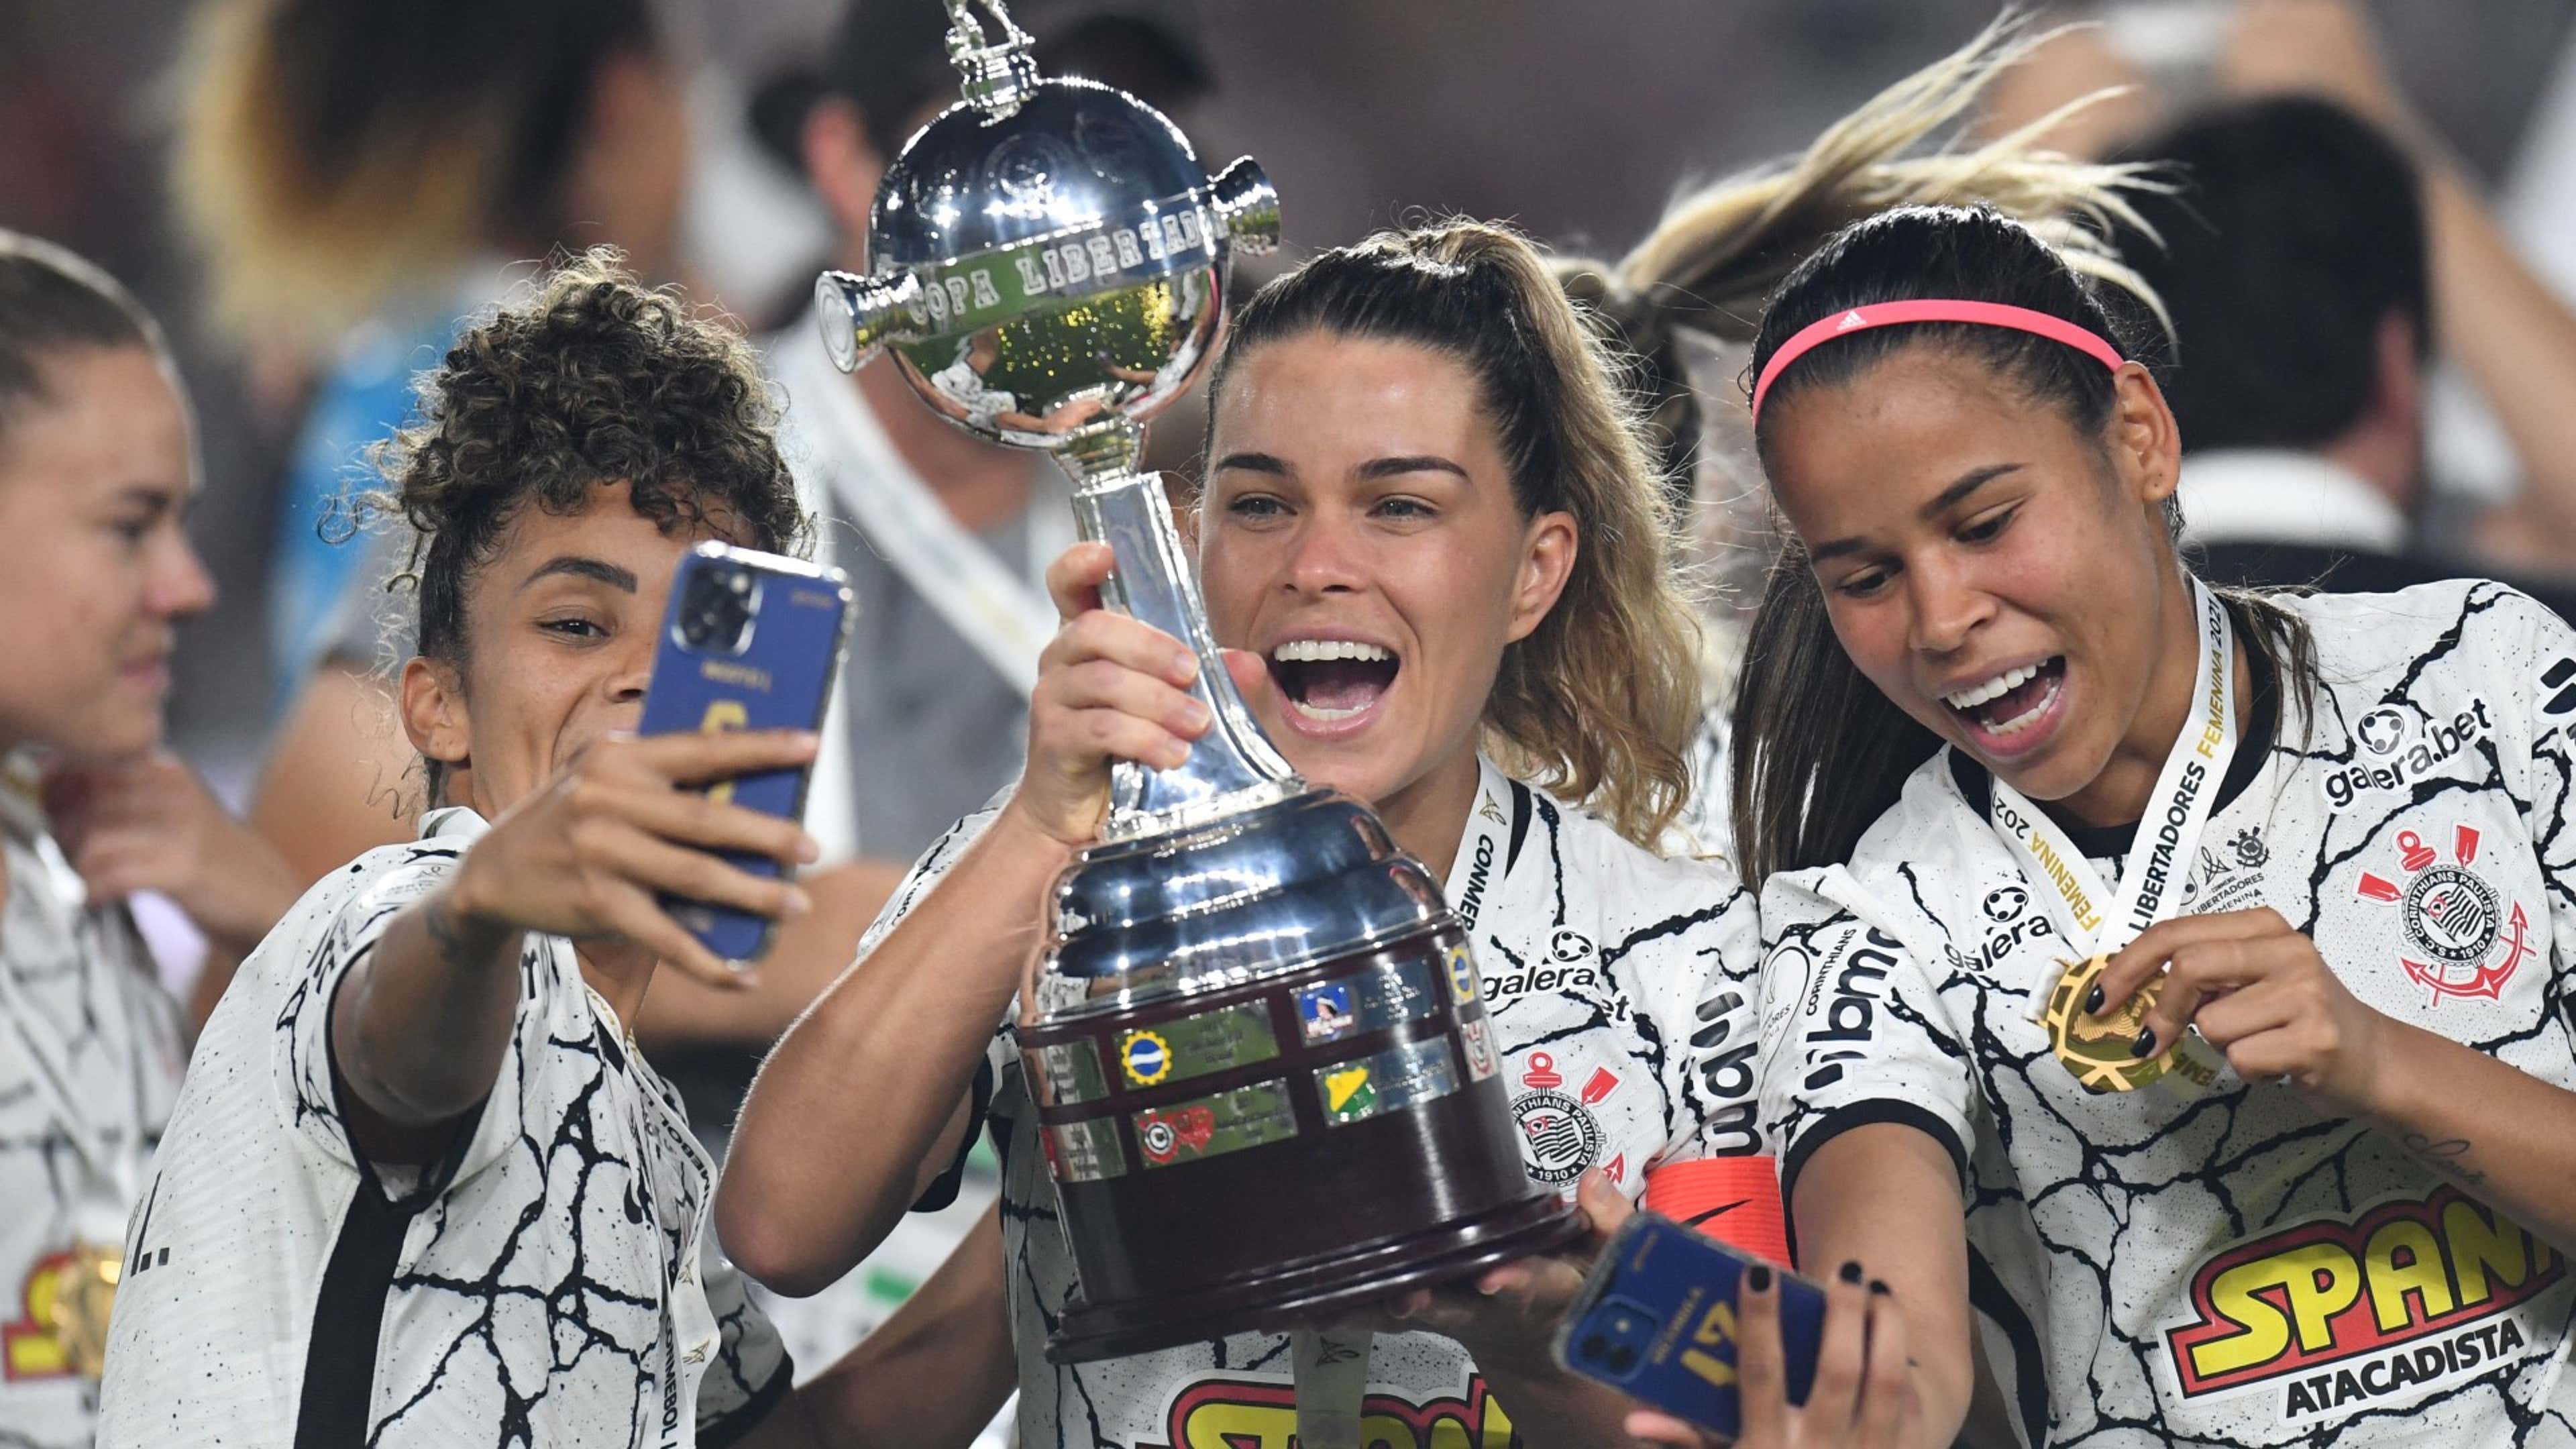 Os maiores campeões do Brasileirão feminino: times que já